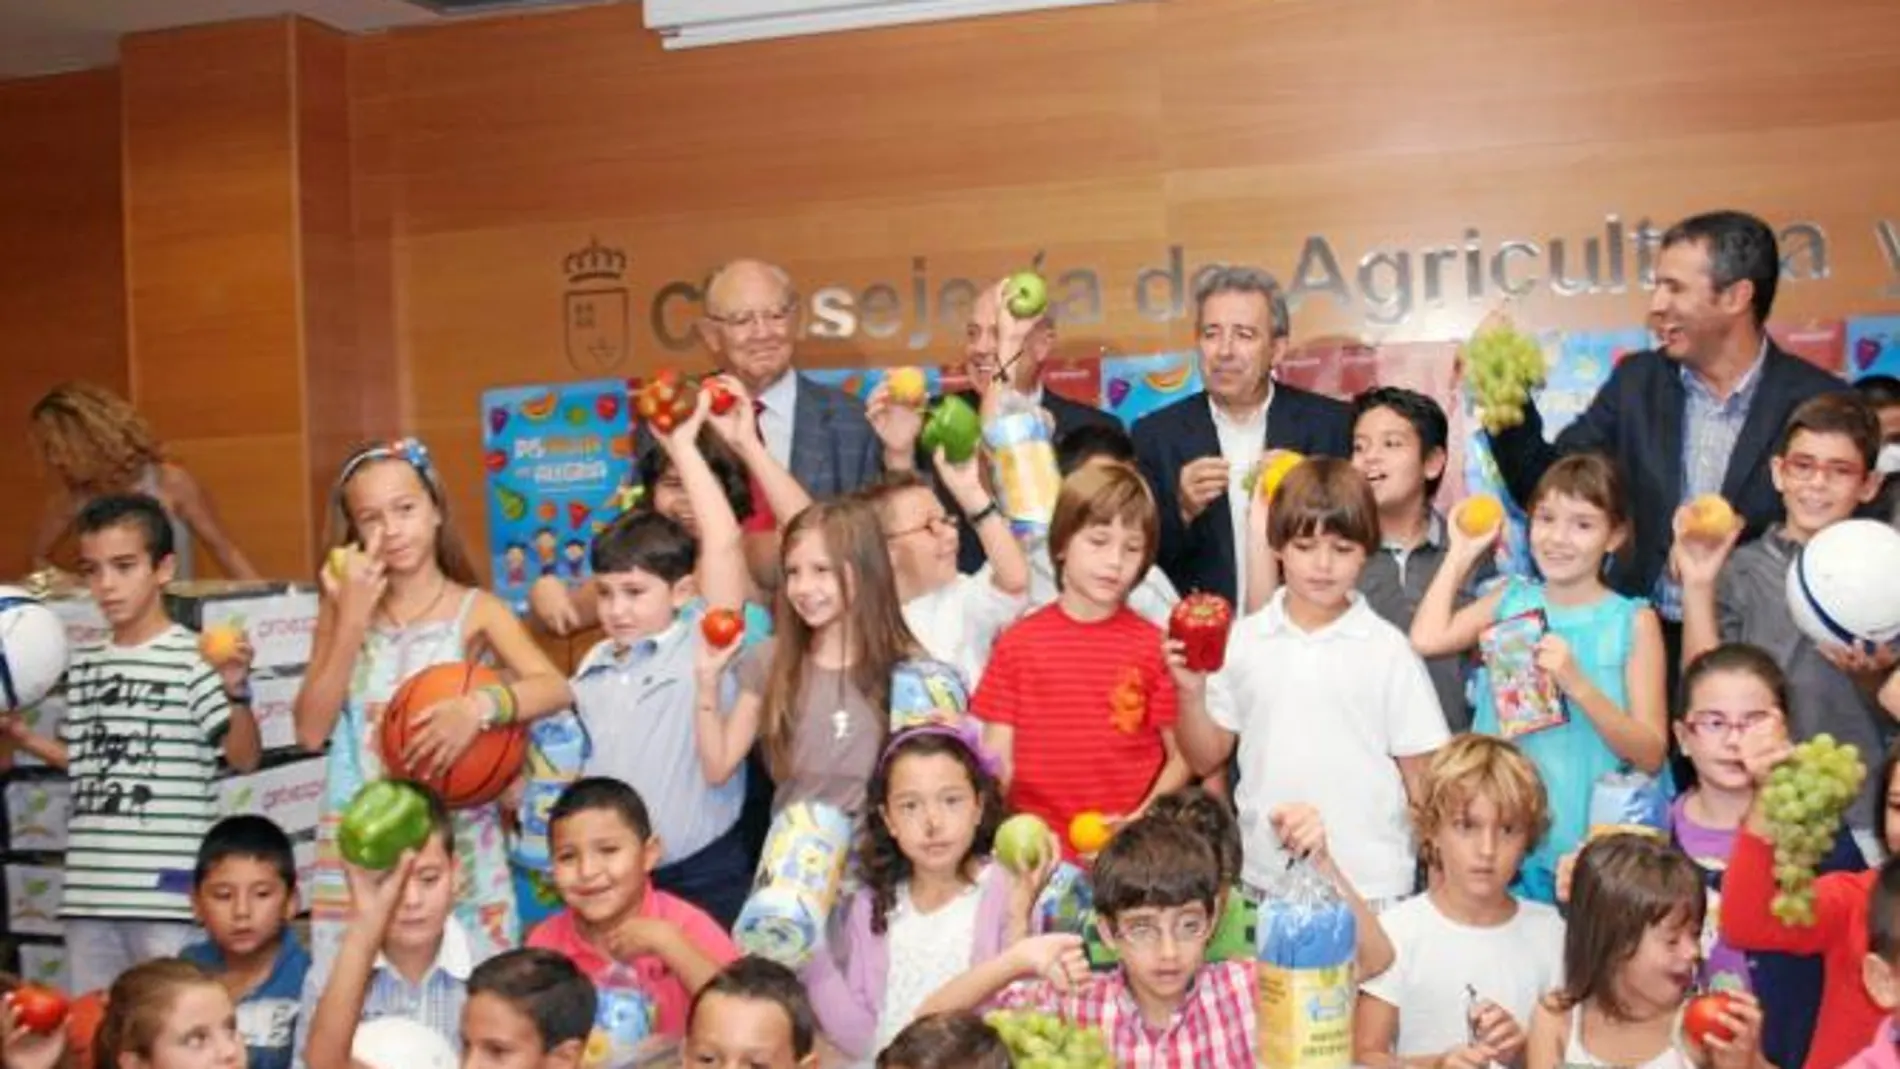 El consejero de Agricultura, Antonio Cerdá, con los escolares